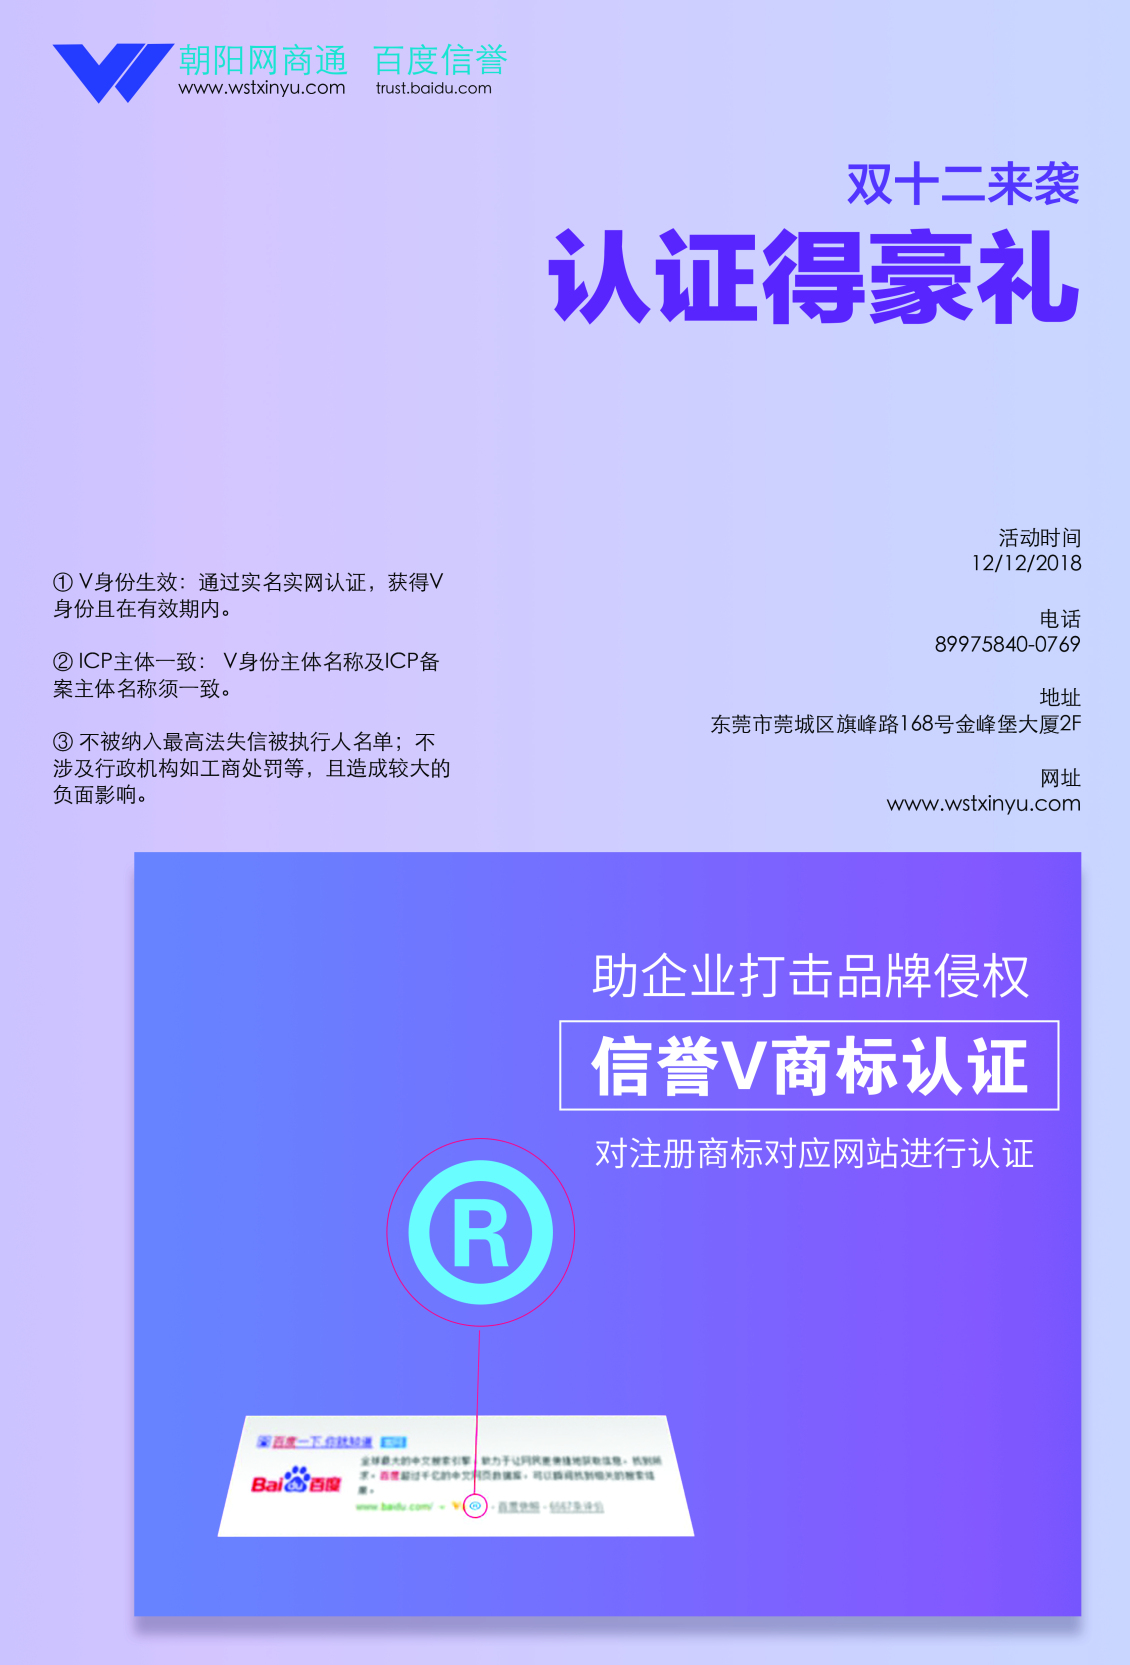 淘宝美工刘斌公司宣传海报作品